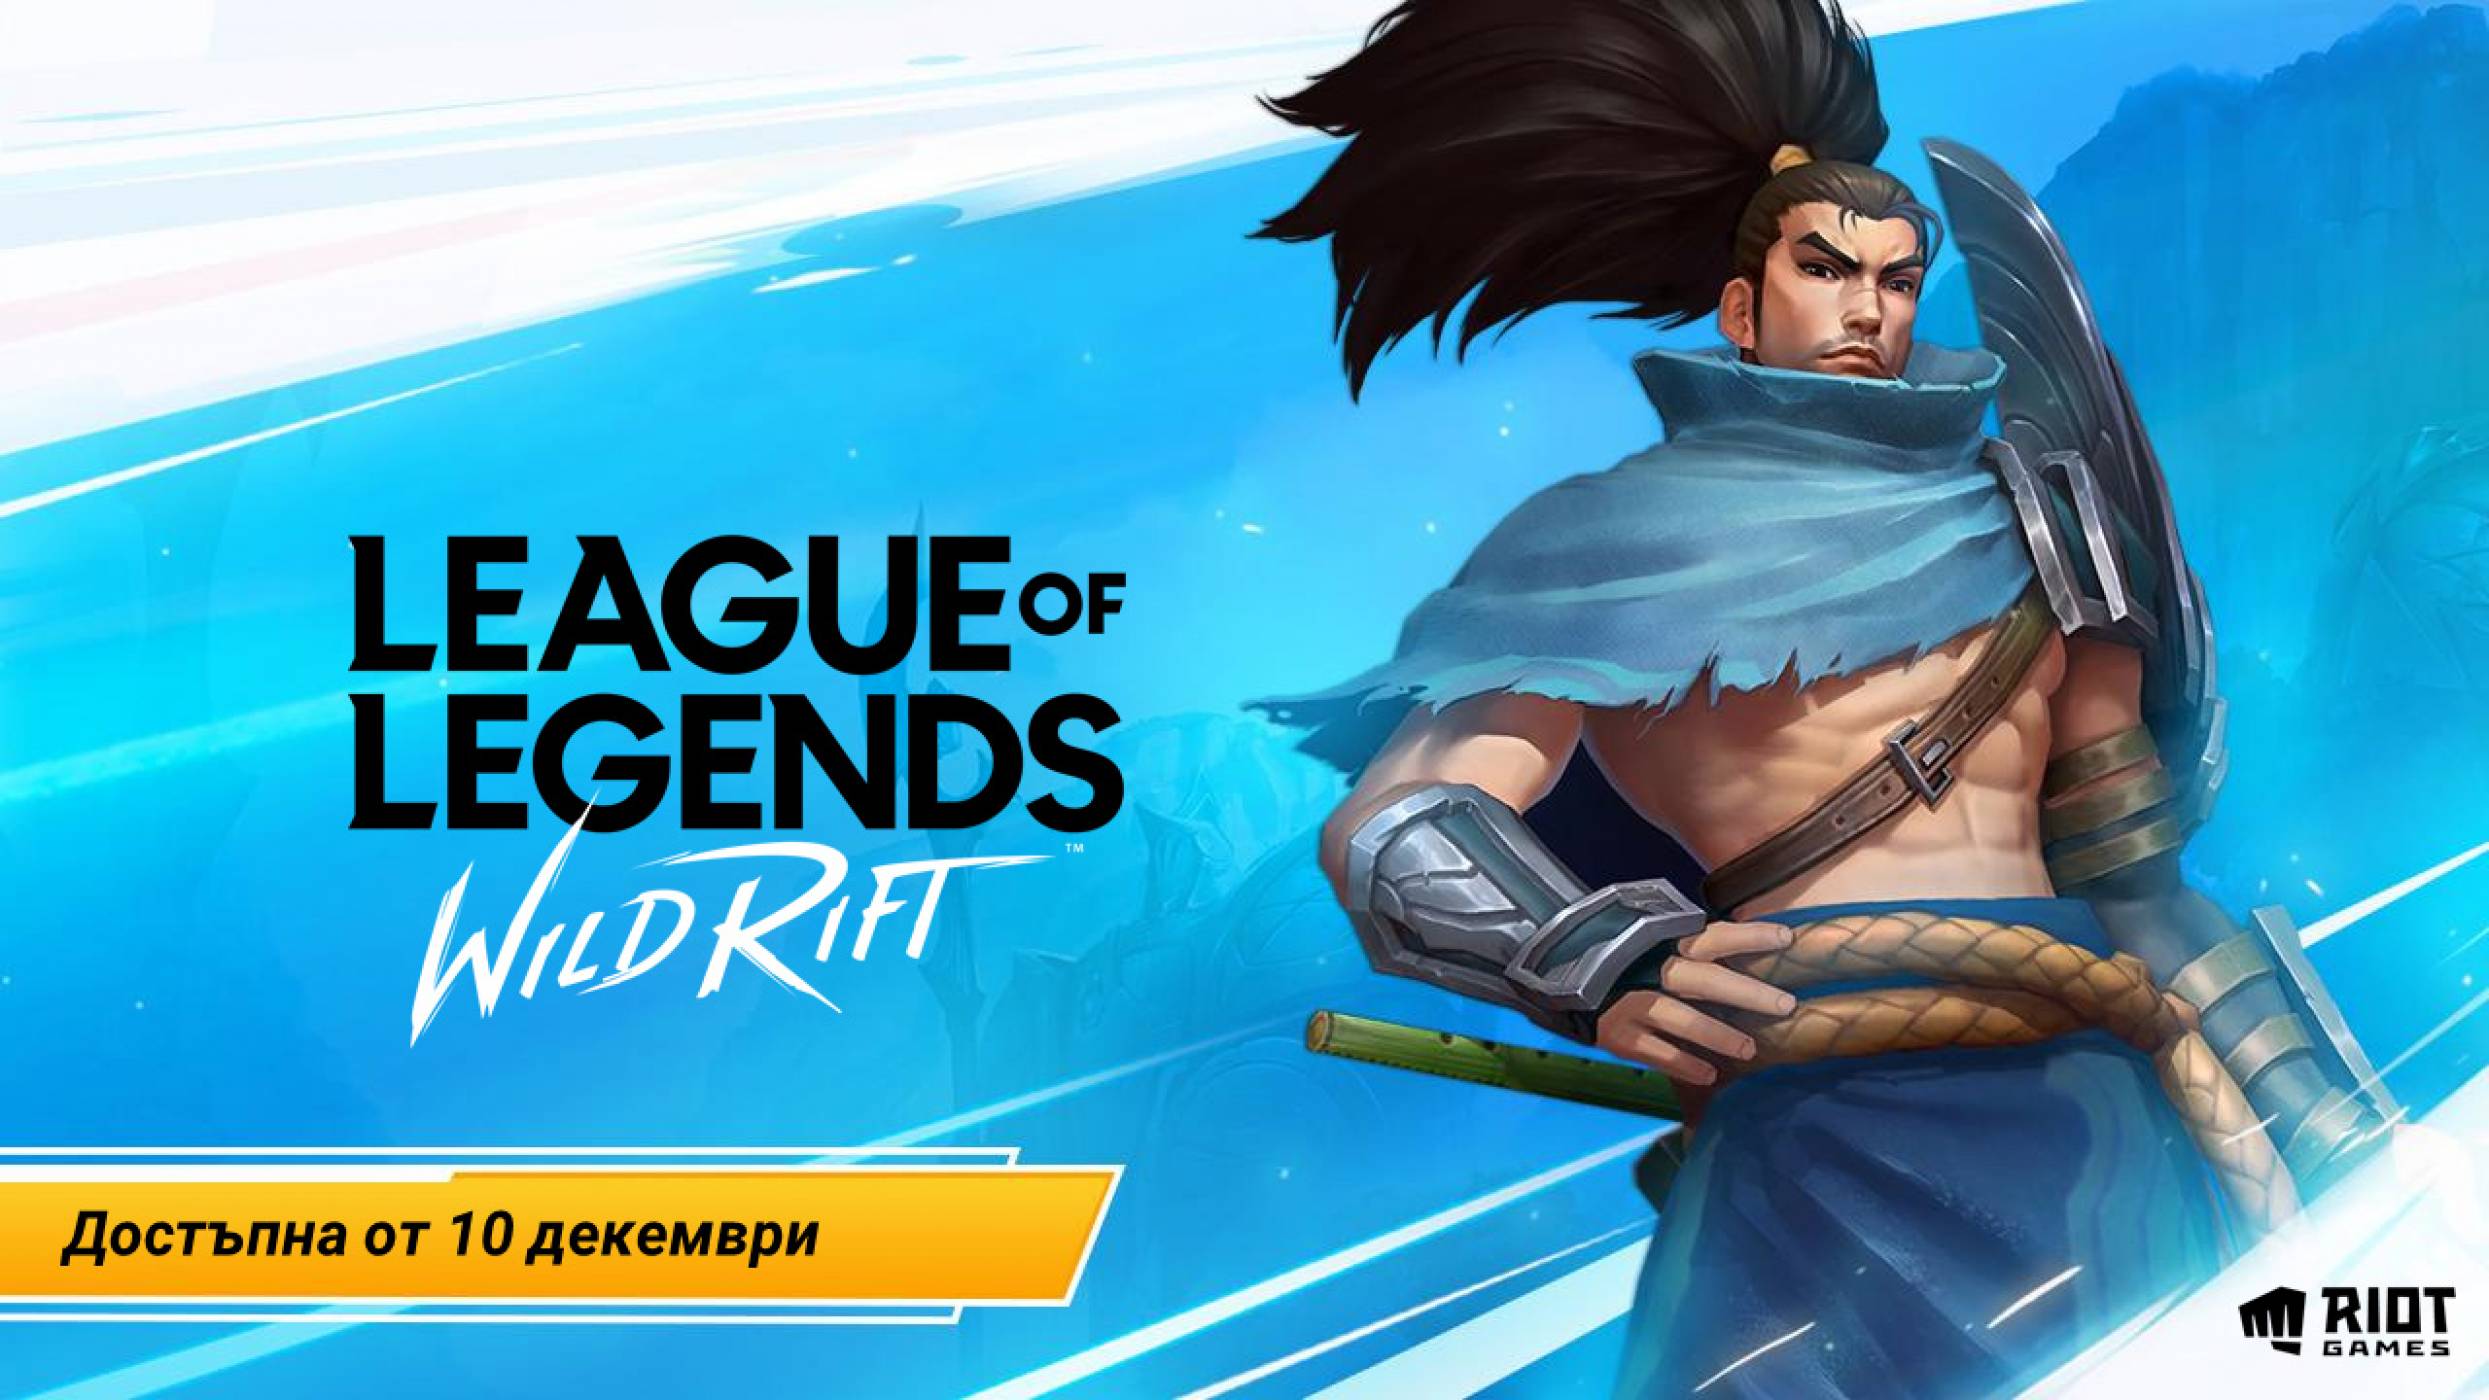 Wild Rift  - мобилната версия на култовата игра League of Legends, вече е достъпна и за българските играчи (ВИДЕО)